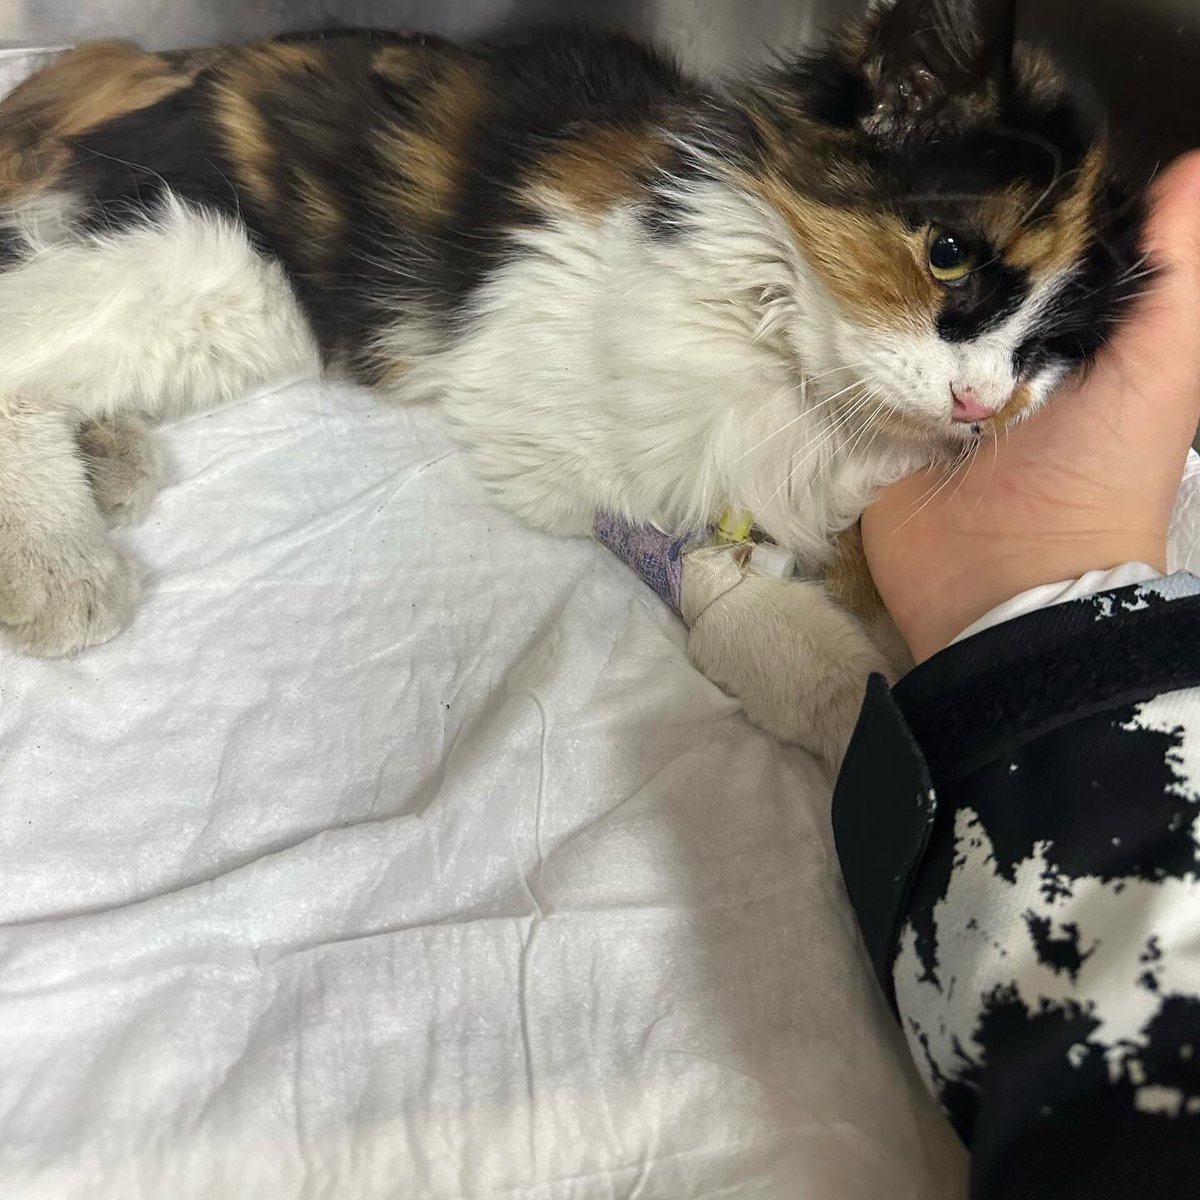 İstanbul'daki bu sevimli Calico kedi bir kaza sonucu omurgası kırık bulundu. Başarılı bir ameliyat geçirdi fakat özel ilgiye ihtiyacı var, tuvaletini kendi kendine yapamıyor.Sevgi dolu bir yuva sağlamak isteyenler, iletişim: @peteklbn #engellicanlaraöncelik #engellicanlarayuva 🐾